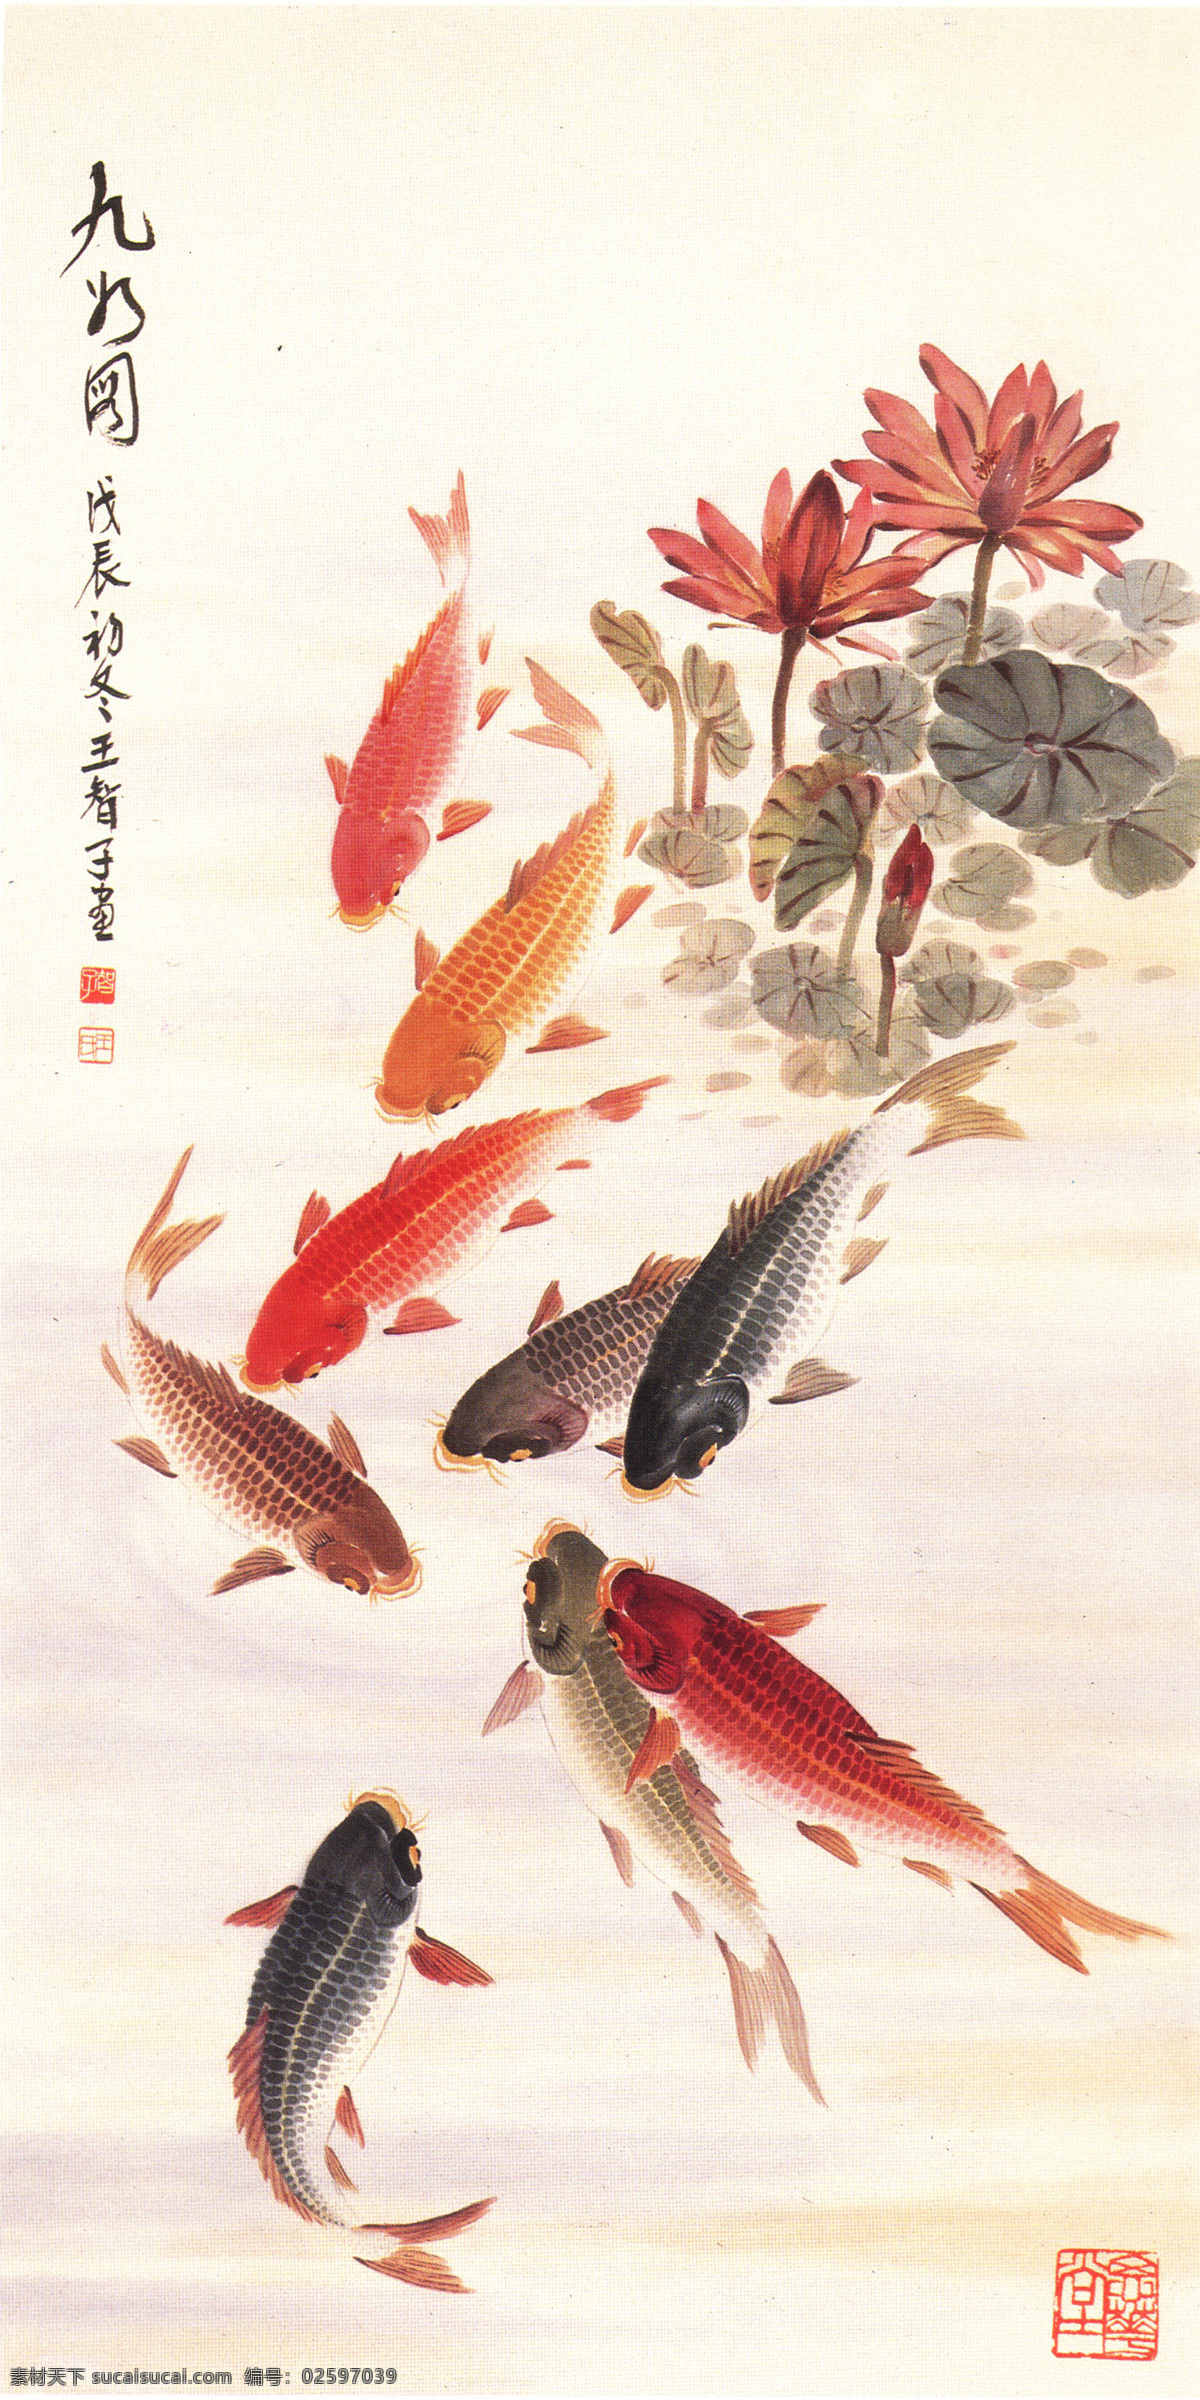 九鱼图 年年有鱼 自由 自在 福气 快乐 装饰画 文化艺术 绘画书法